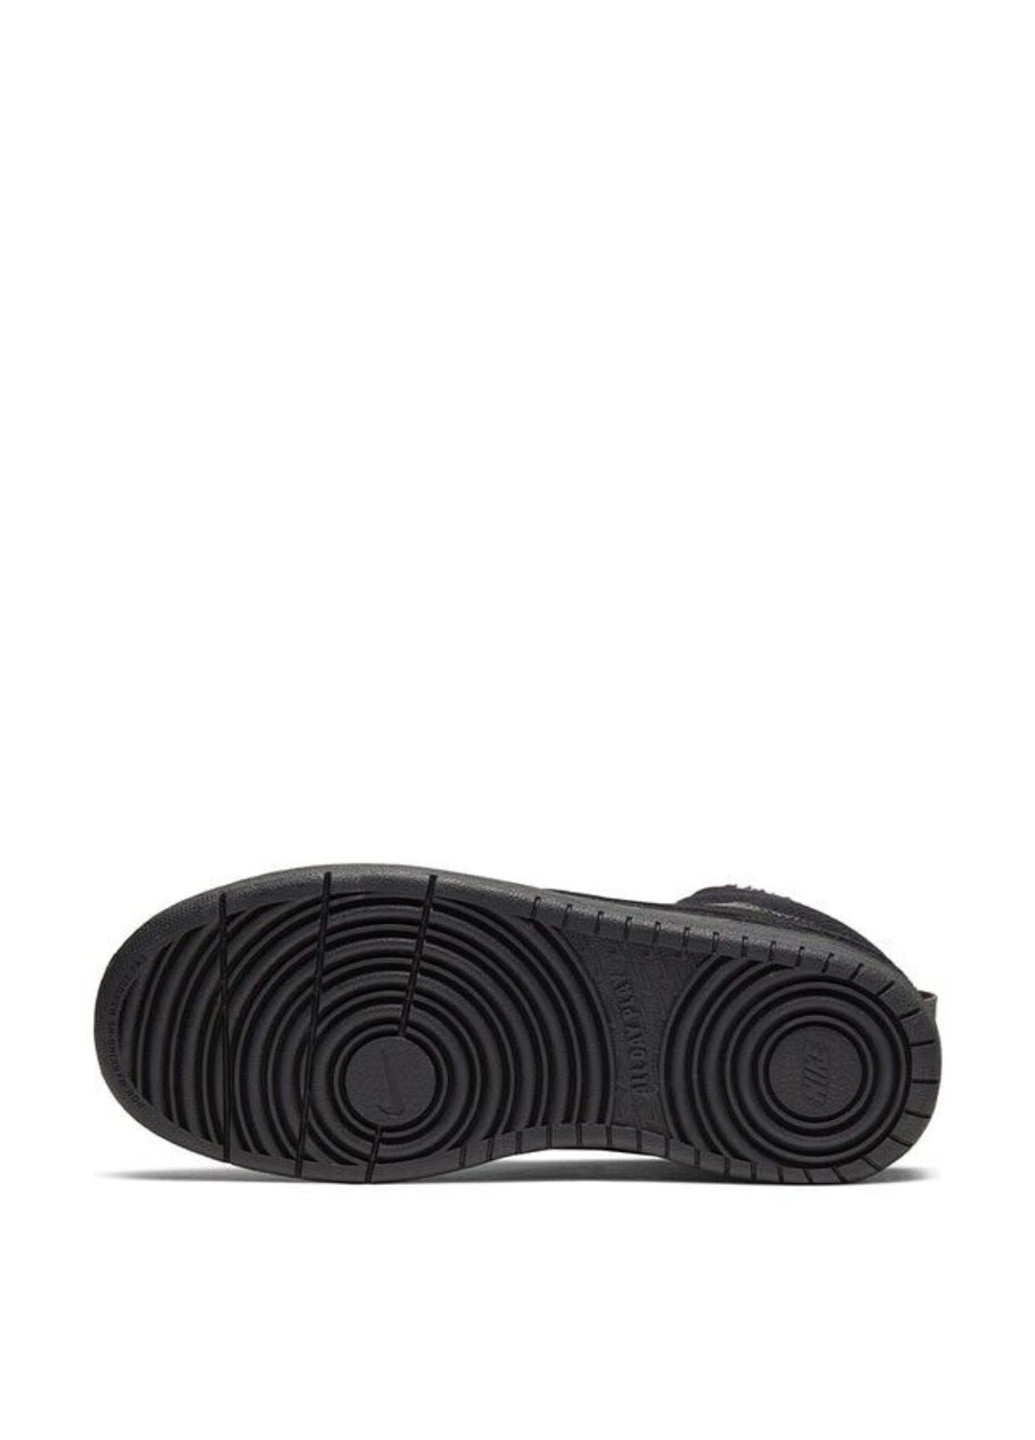 Черные зимние кроссовки cq4023-001_2024 Nike COURT BOROUGH MID 2 BOOT BG (GS)